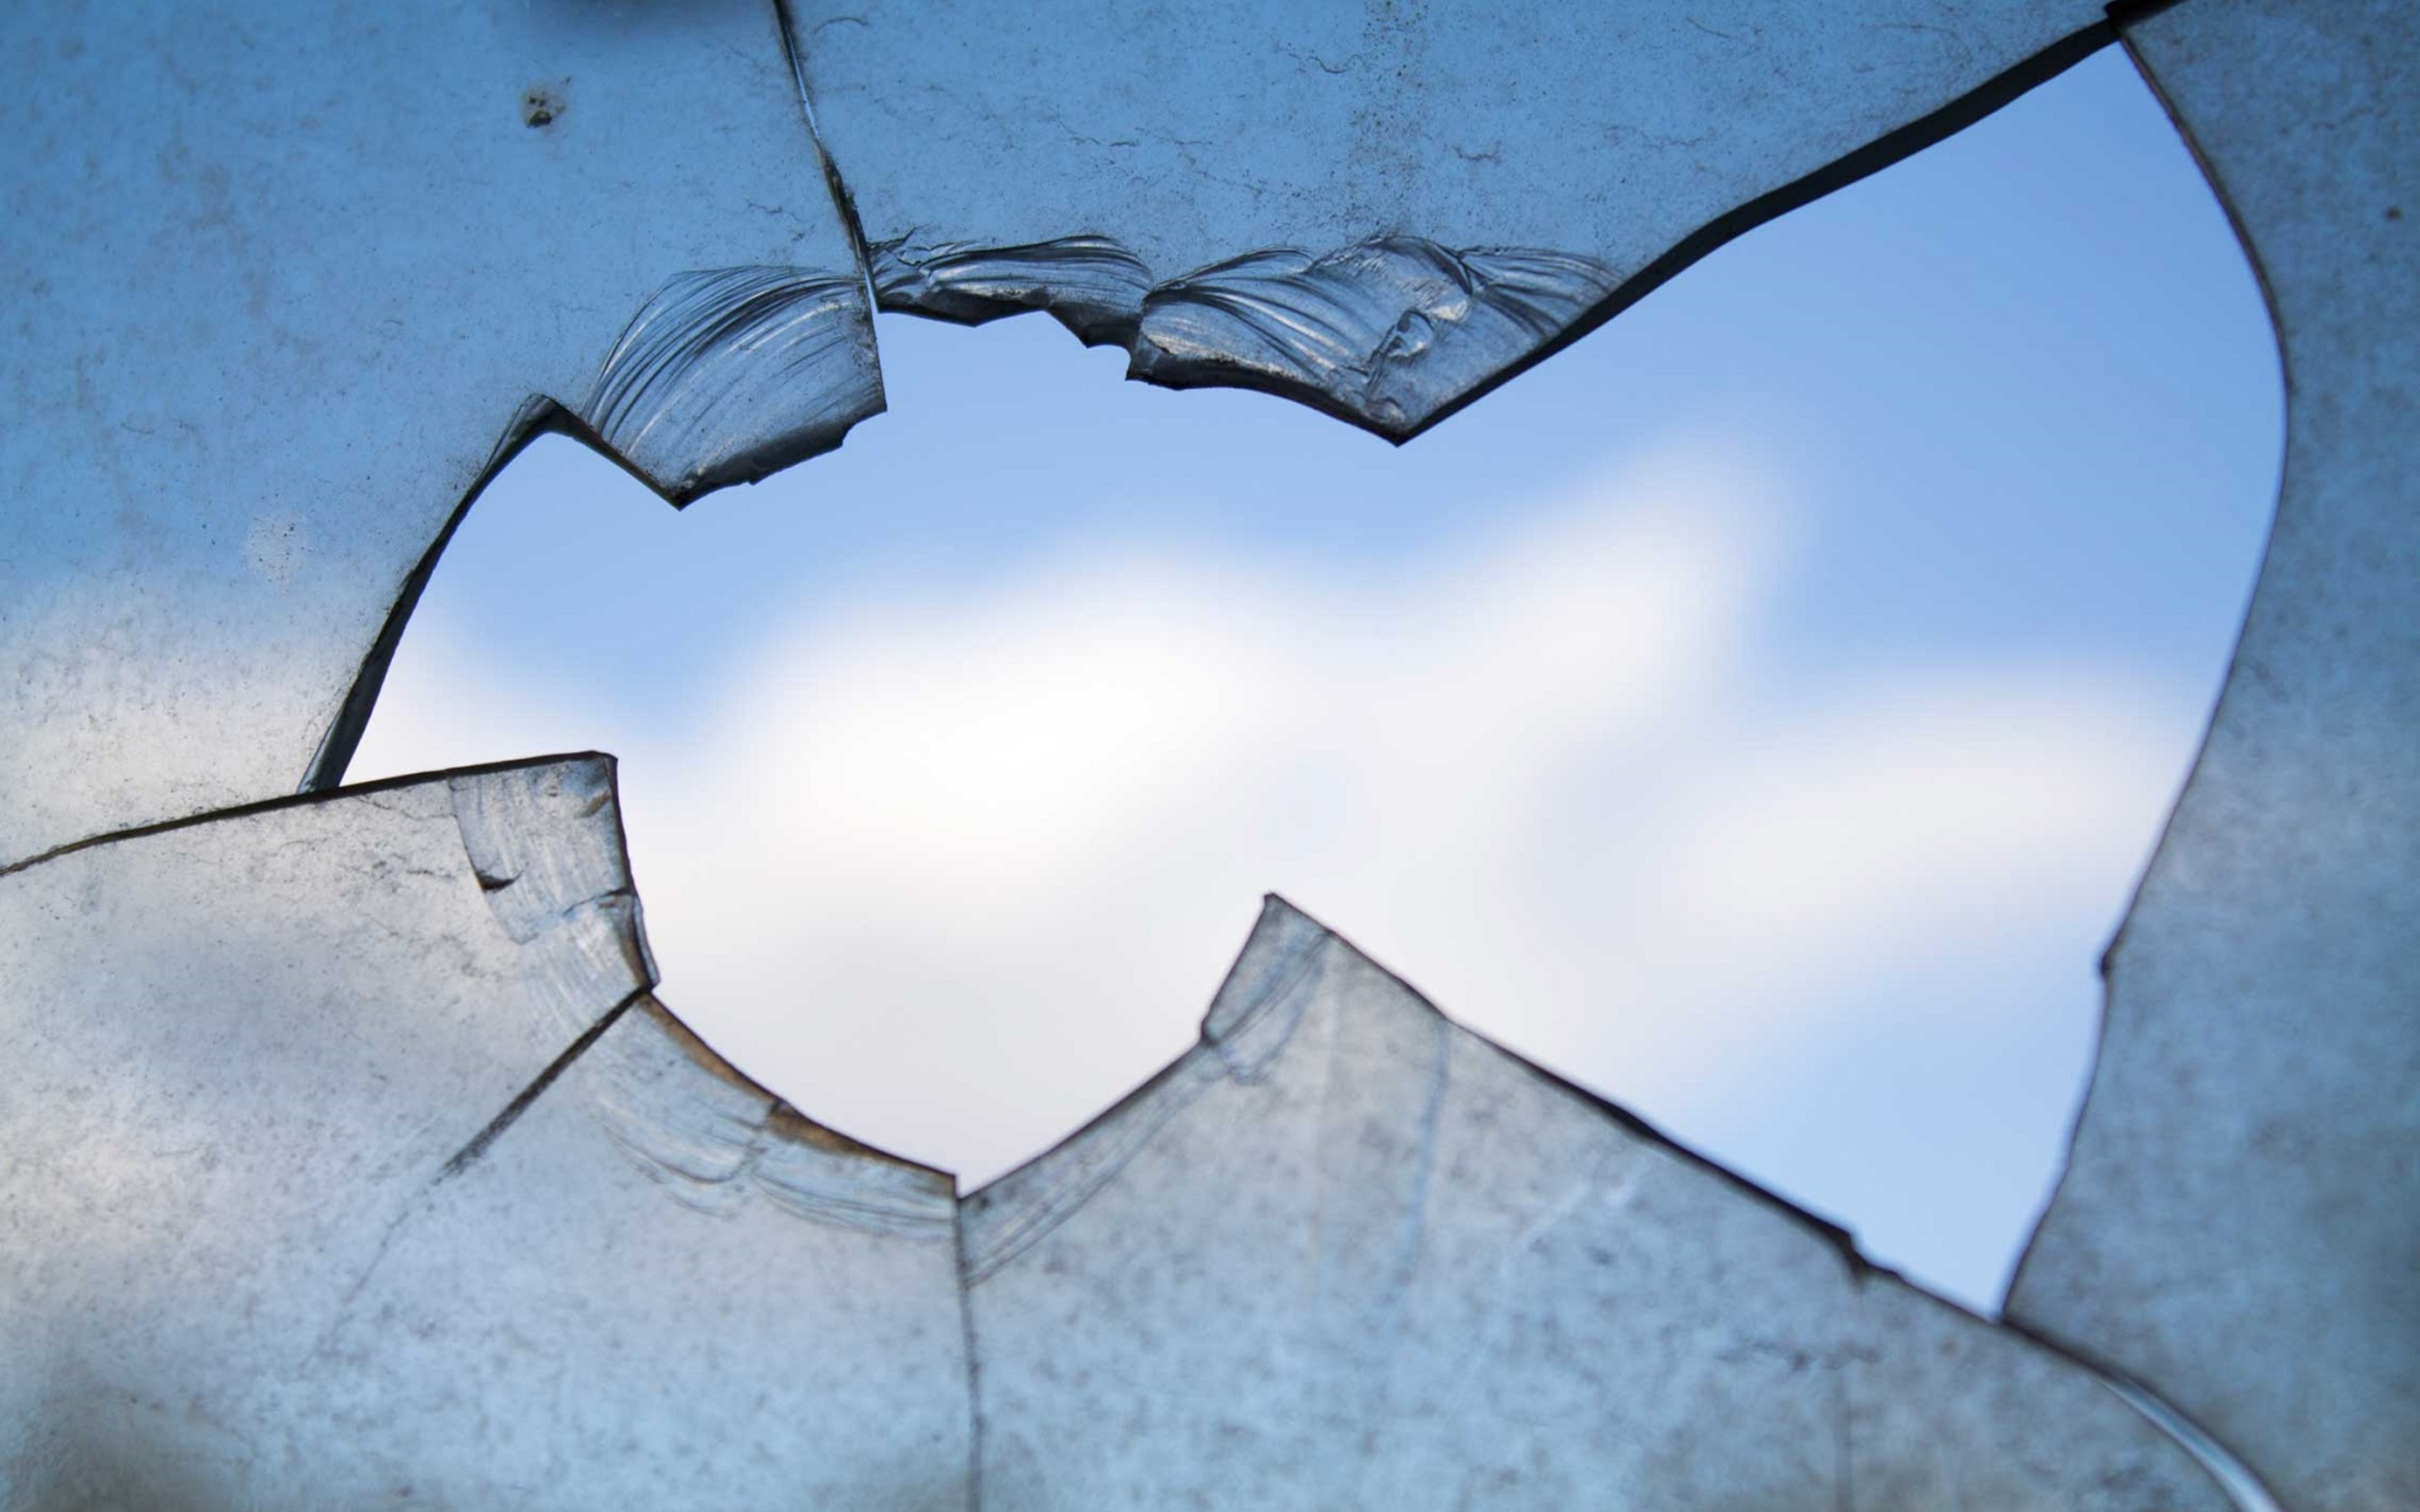 Объект разбить. Разбитое окно. Трещина на стекле. Разбитые окна. Разбитое стекло в окне.